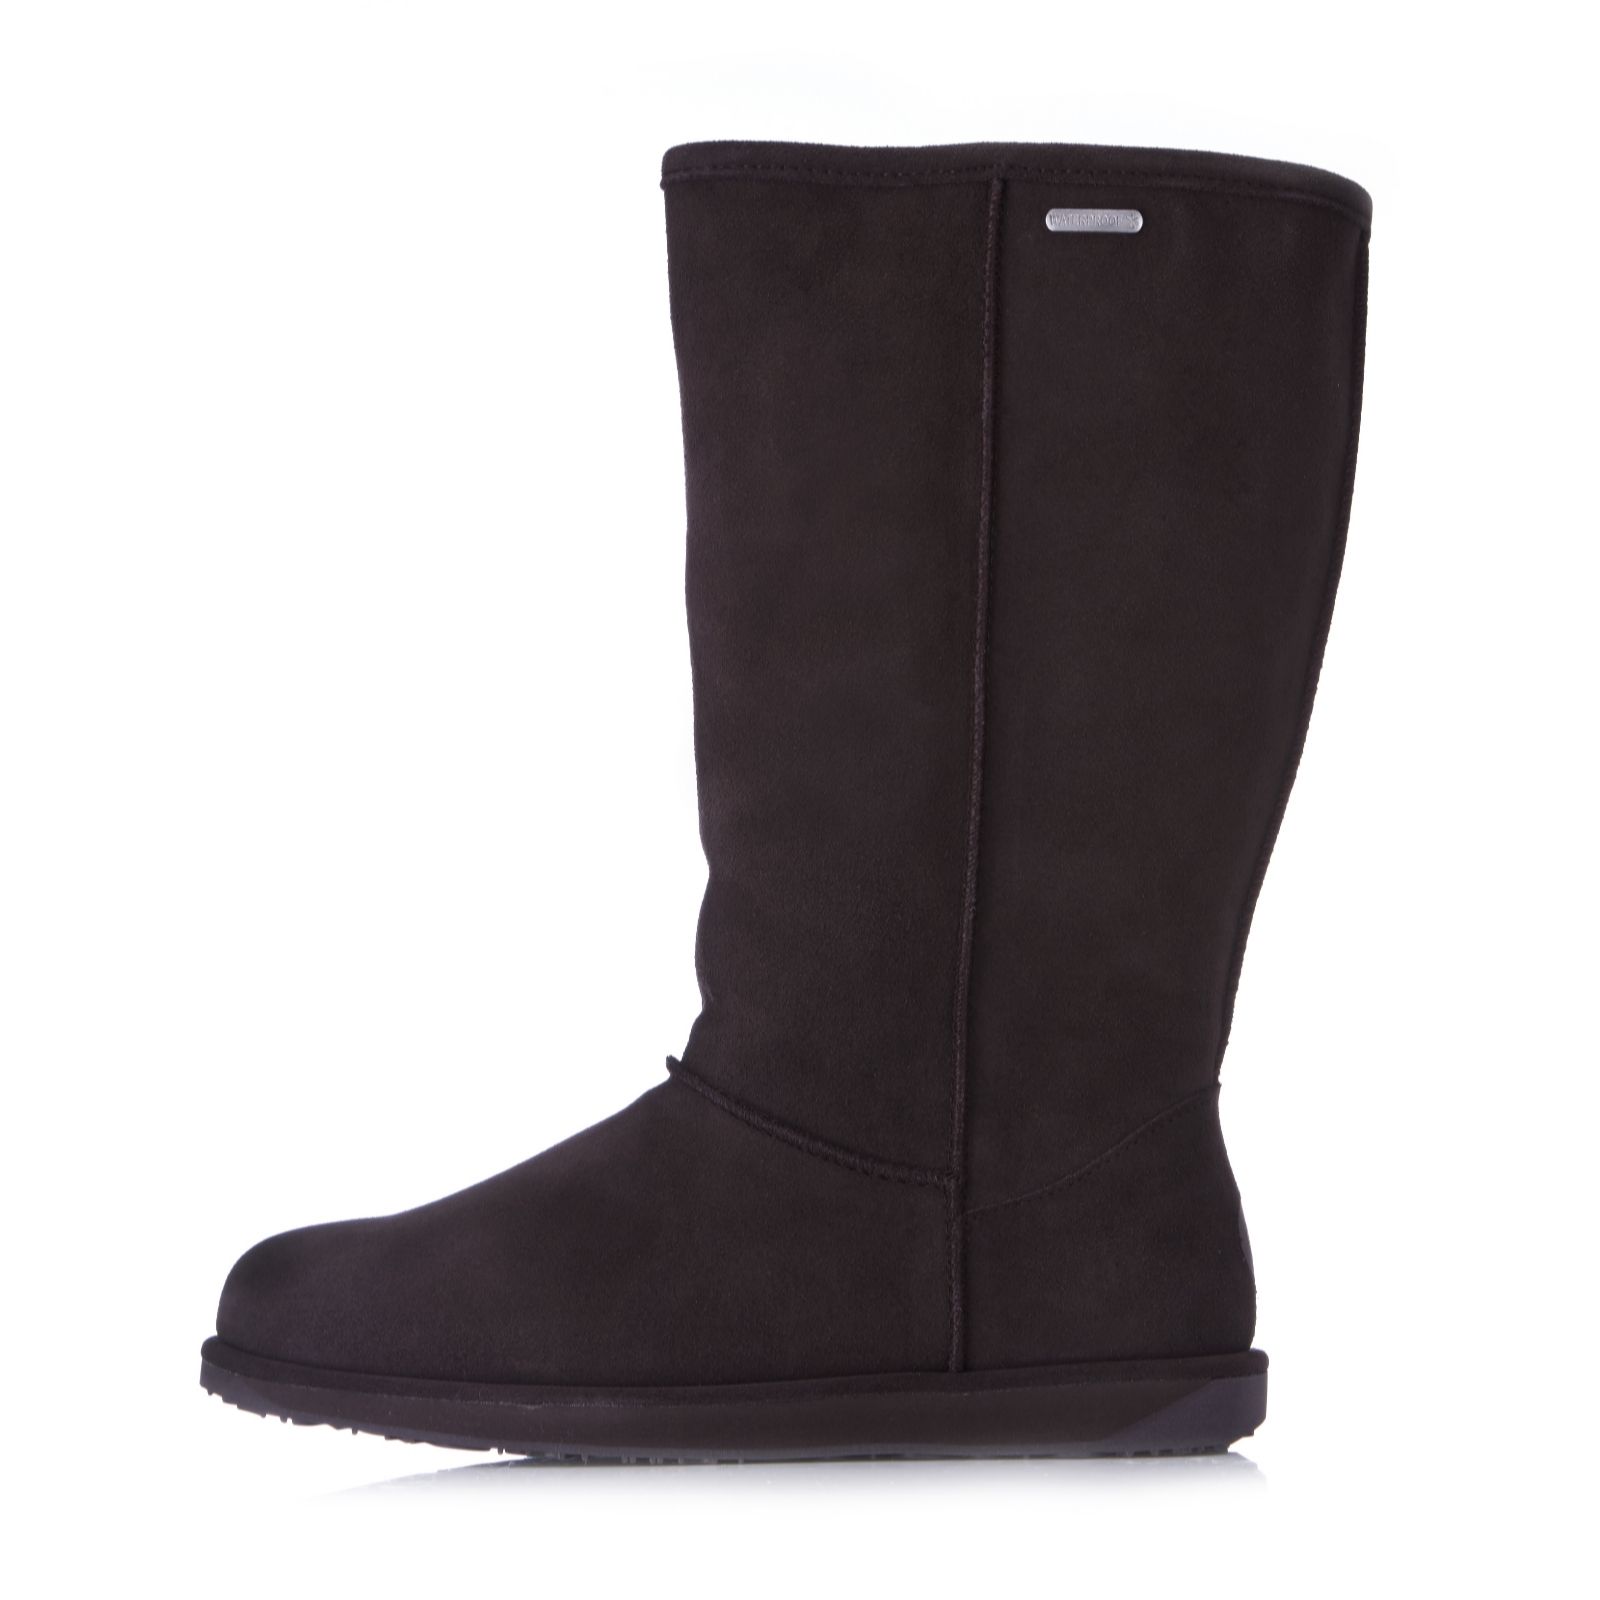 waterproof sheepskin boots uk